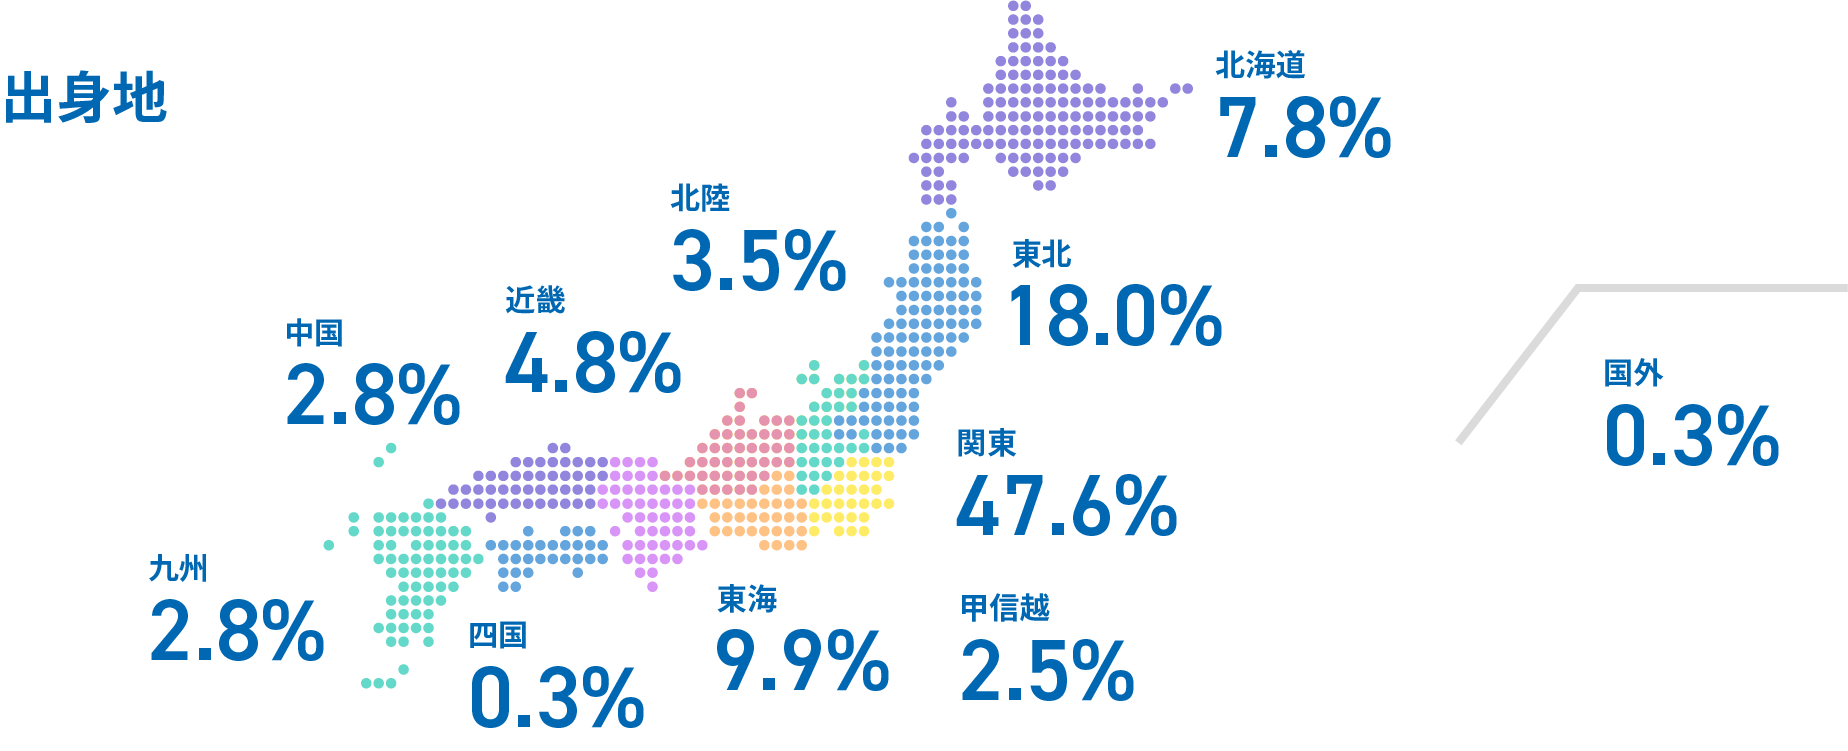 出身地 北陸 3.5% 近畿 4.8% 中国 2.8% 九州 2.8% 北海道 7.8% 東北 18.0% 北関東 4.3% 南関東 43.3% 国外 0.3% 四国 0.3% 東海 9.9% 甲信越 2.5%